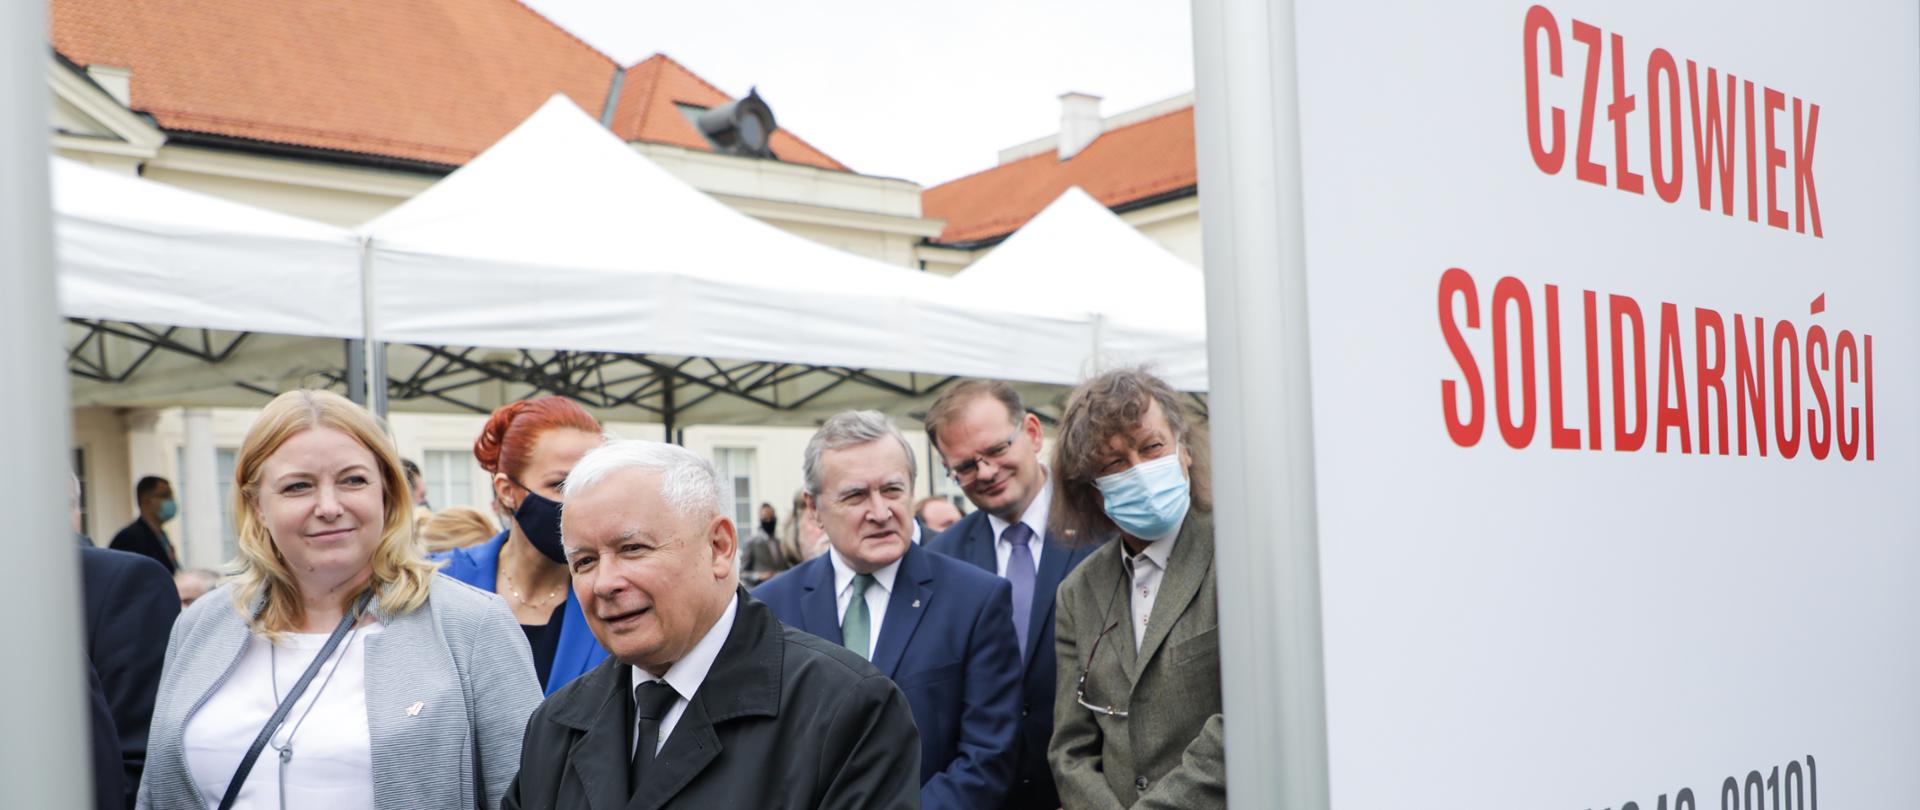 „Lech Kaczyński. Człowiek Solidarności” – wystawa na dziedzińcu MKiDN, fot. Danuta Matloch